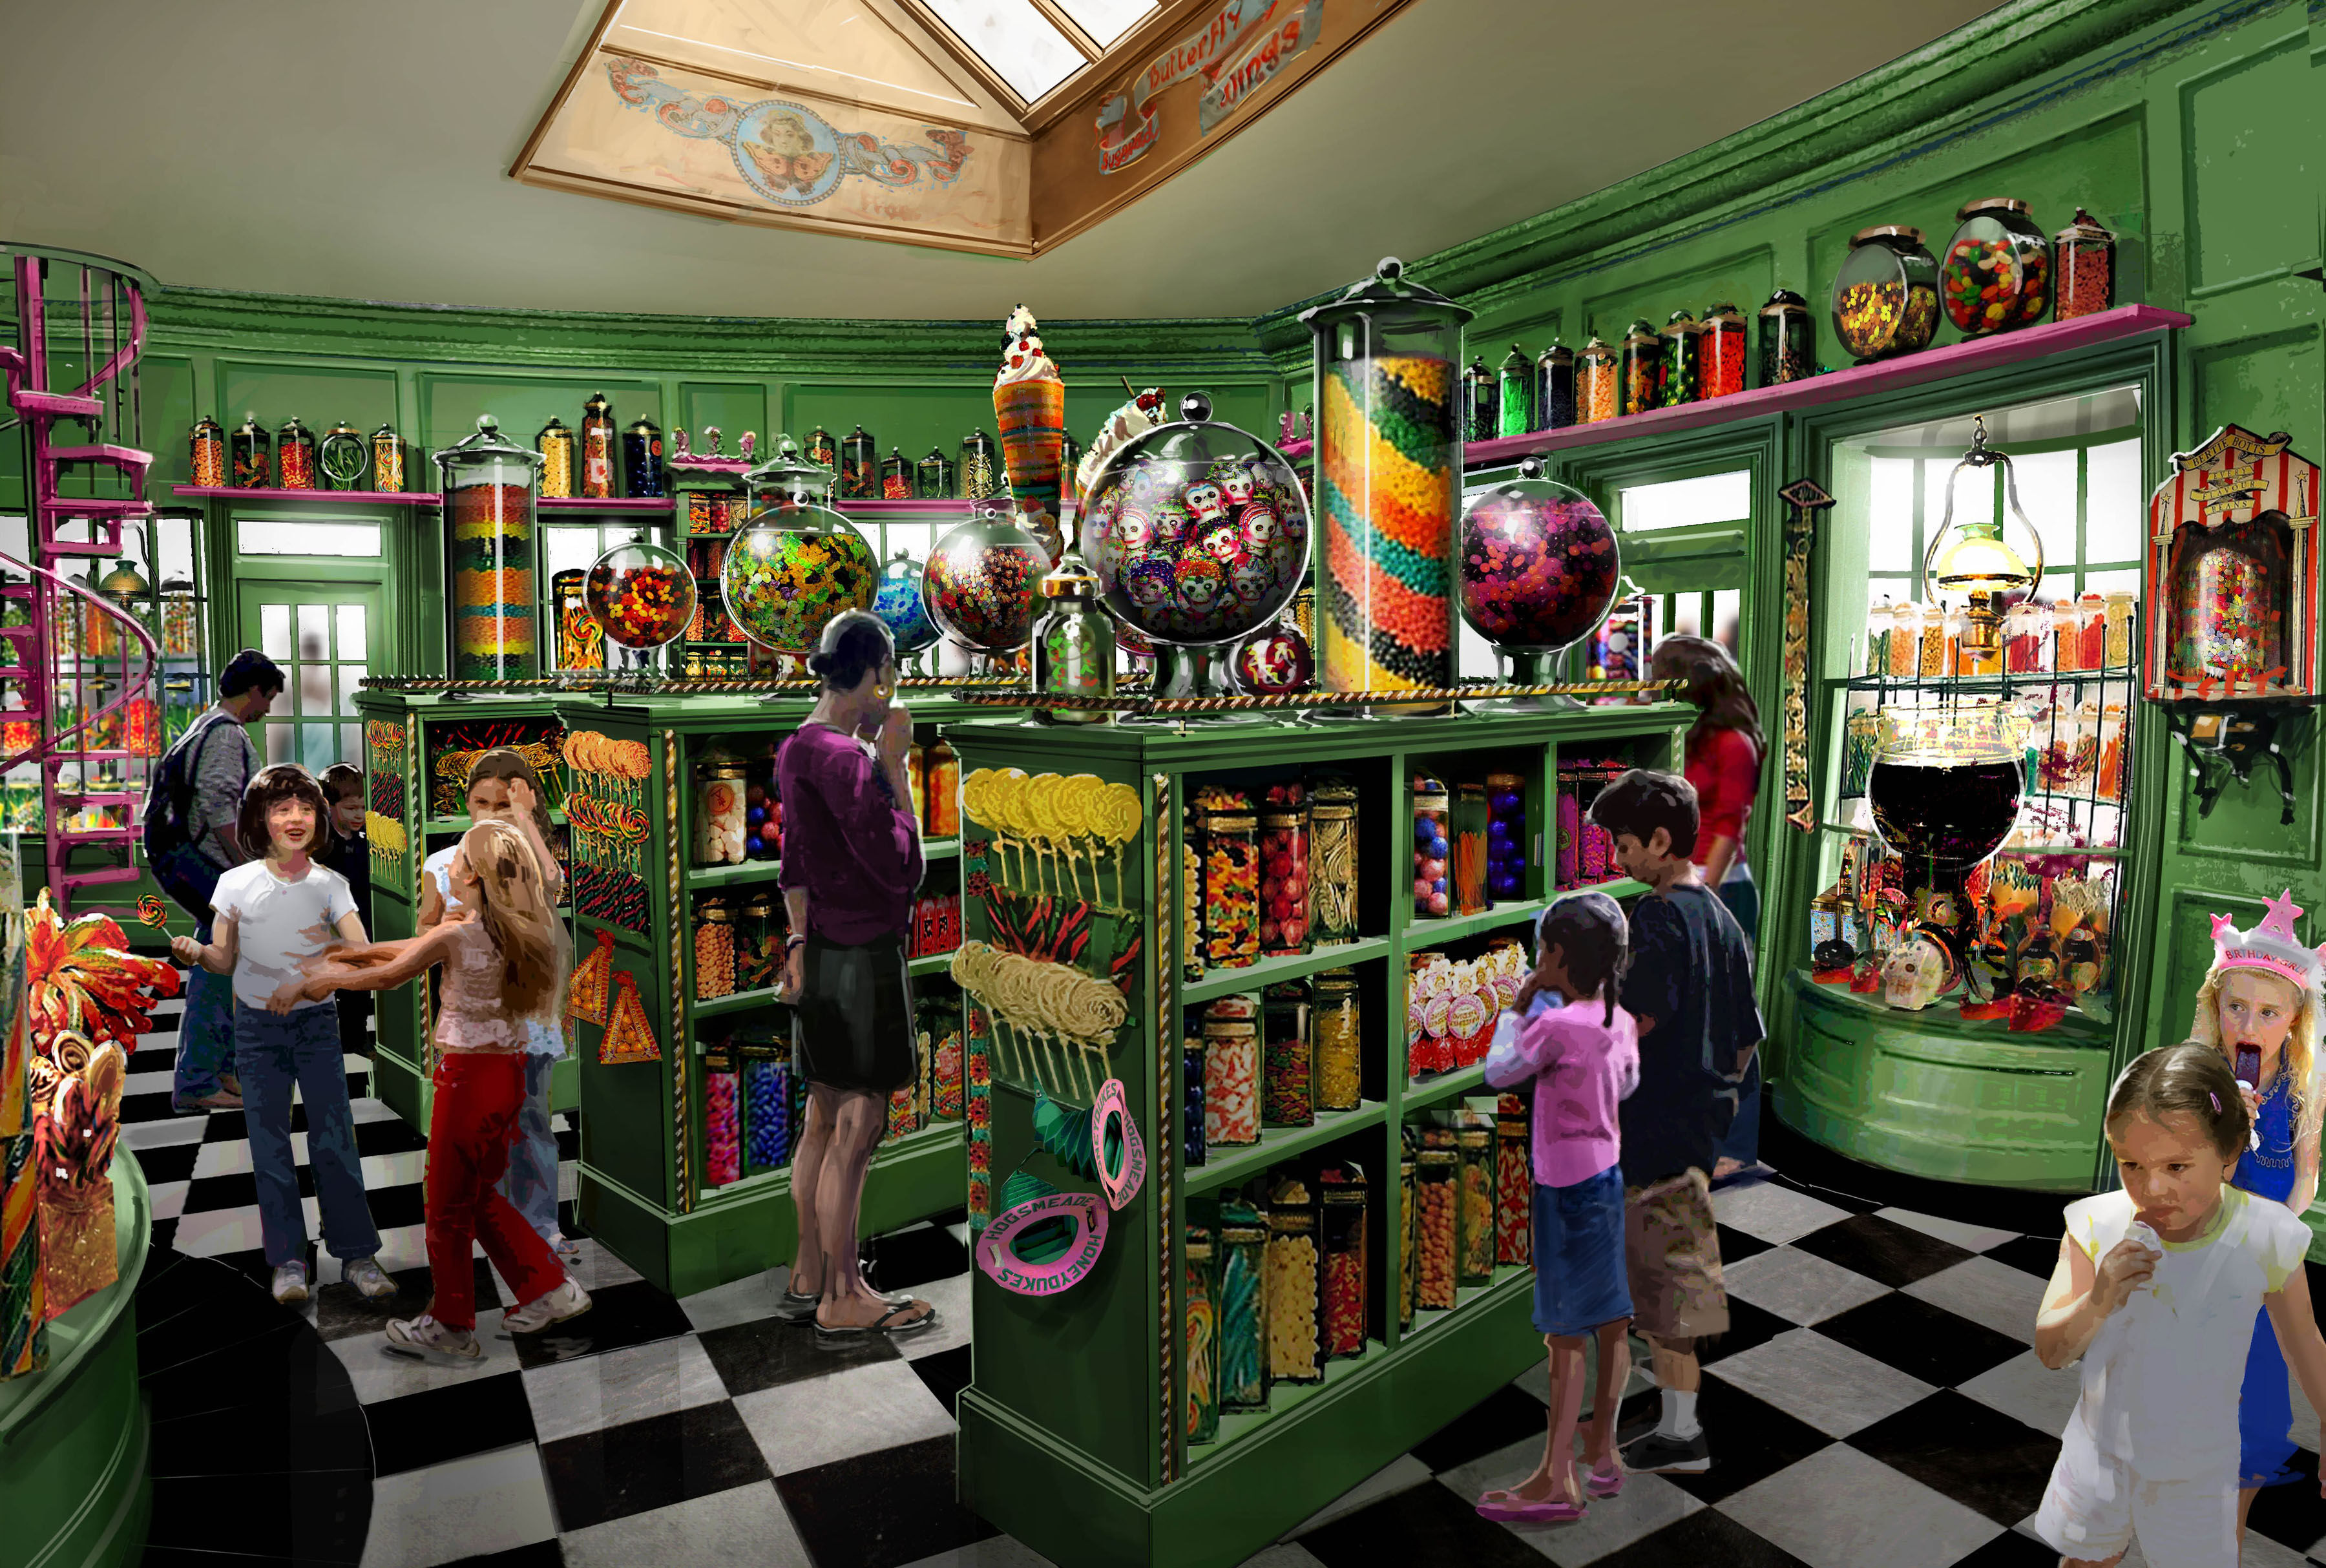 Bonbon Harry Potter Bertie Bott's – La boutique Aux 2 Balais